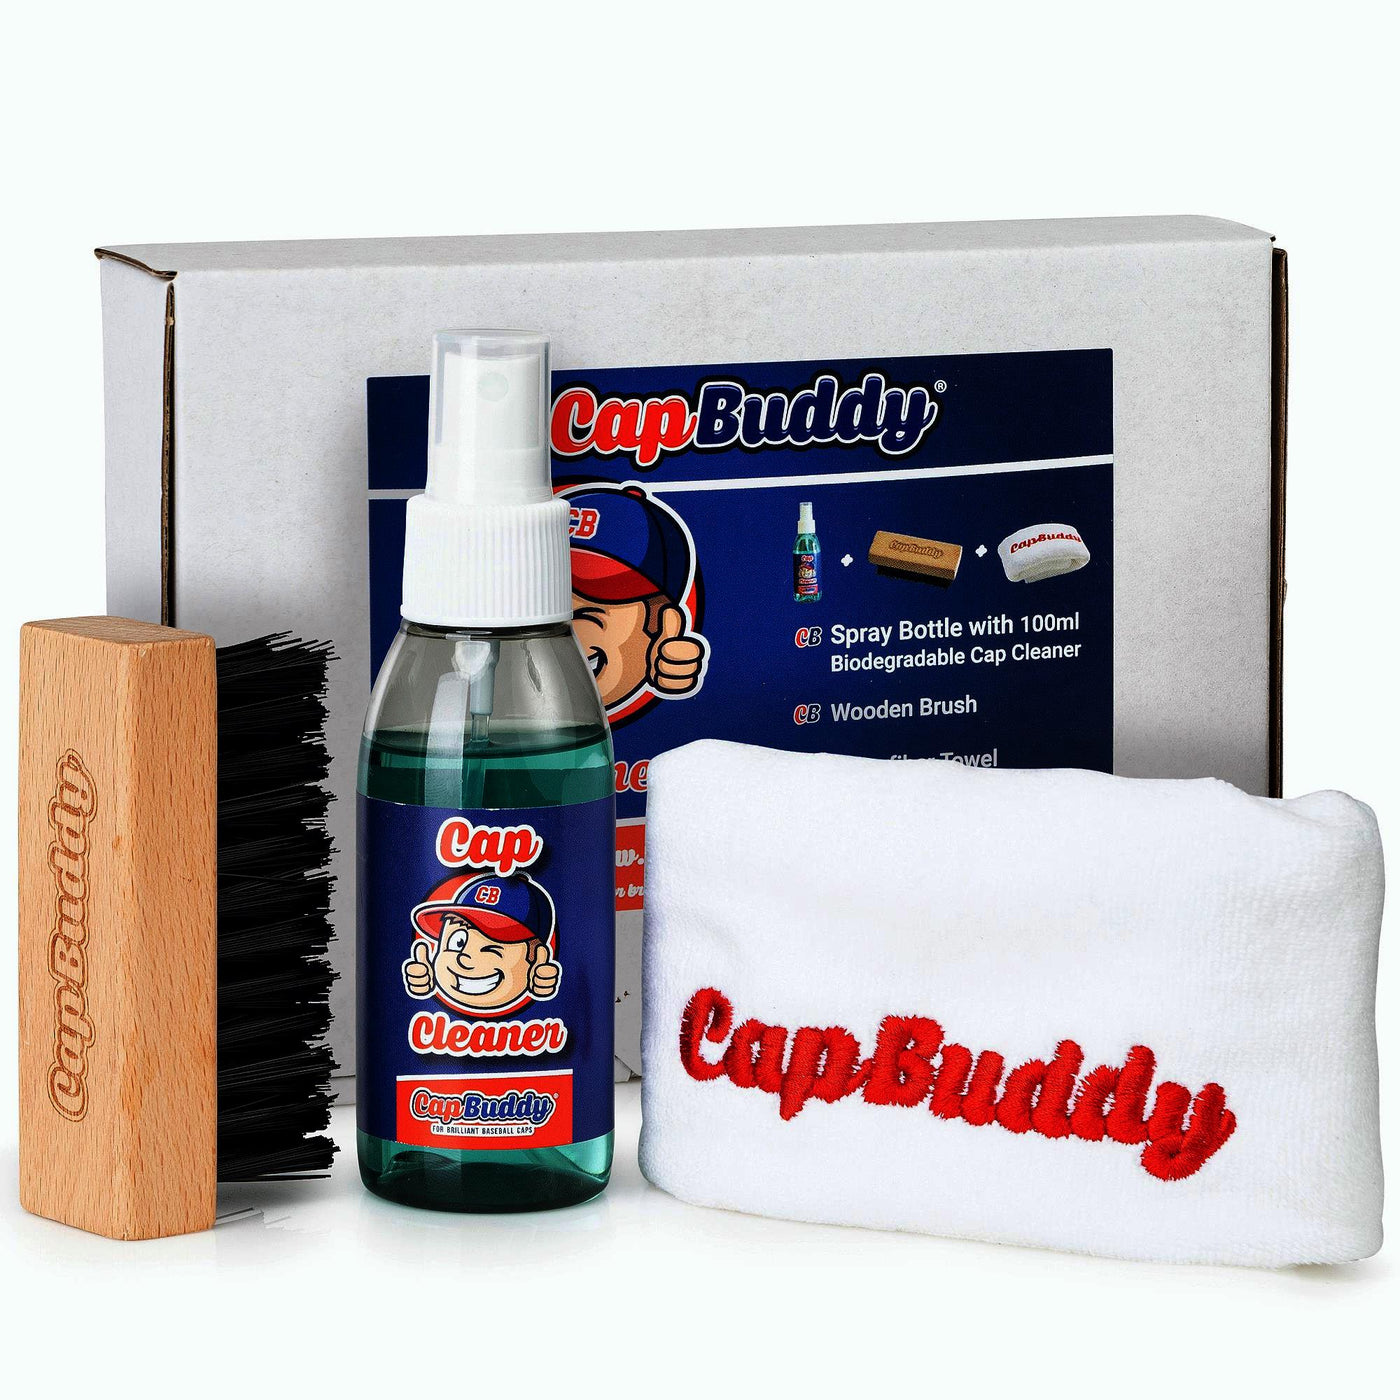 Basecap Reinigen Set - Original Cap Buddy + Cap-Cleaner Set Weiss - Cap Buddy Shop